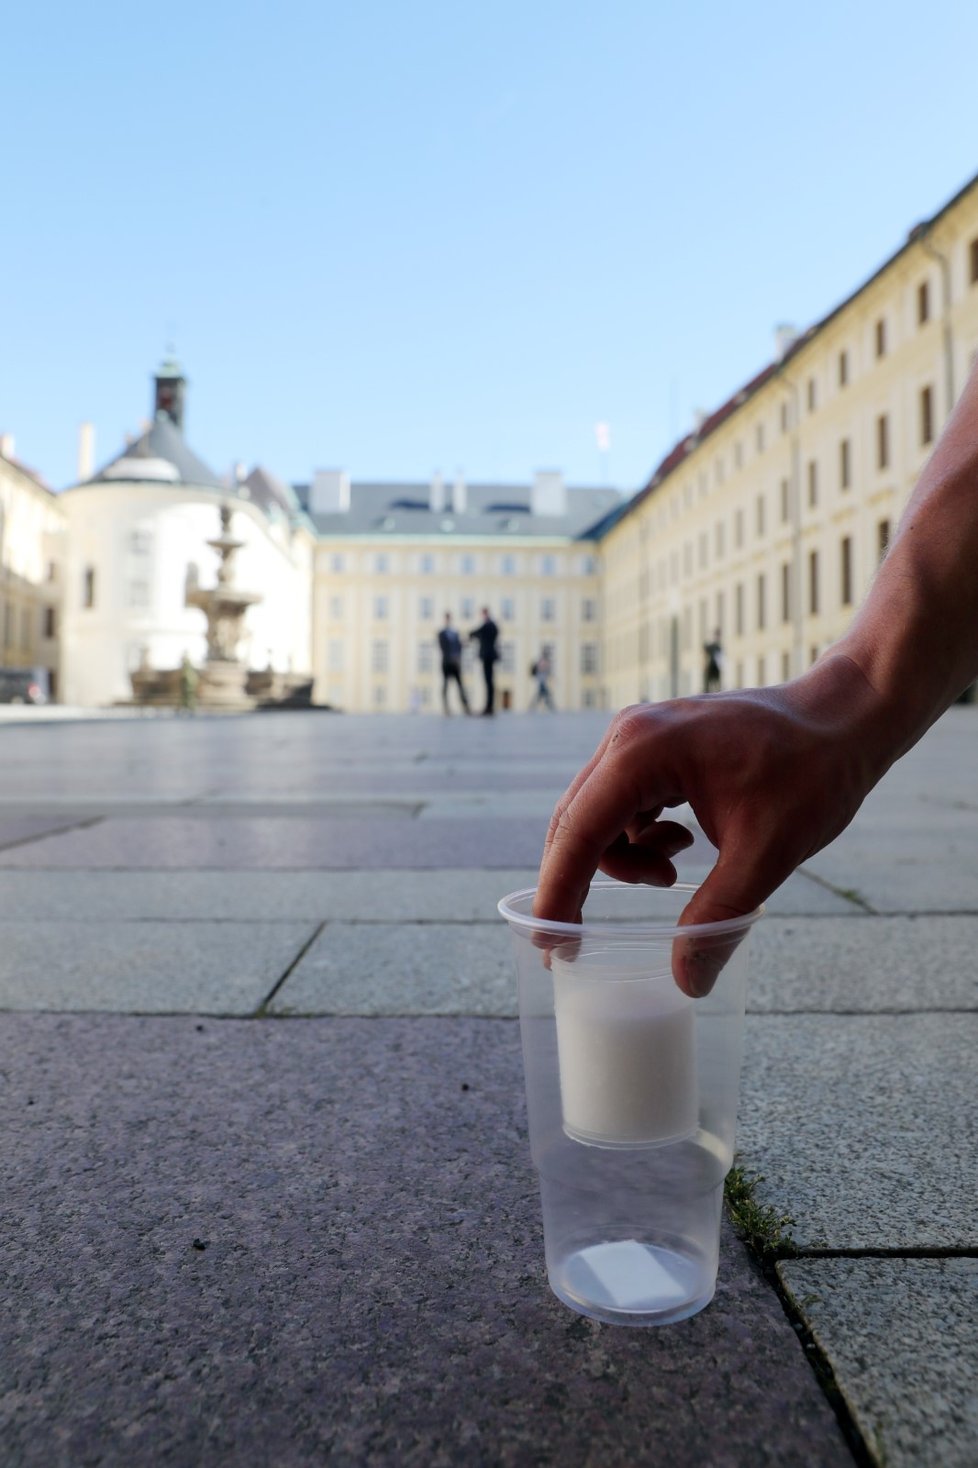 Přípravy pietní akce za oběti koronaviru na Pražském hradě. Během pietního aktu se bude na nádvořích zapáleno téměř 30 000 svíček.